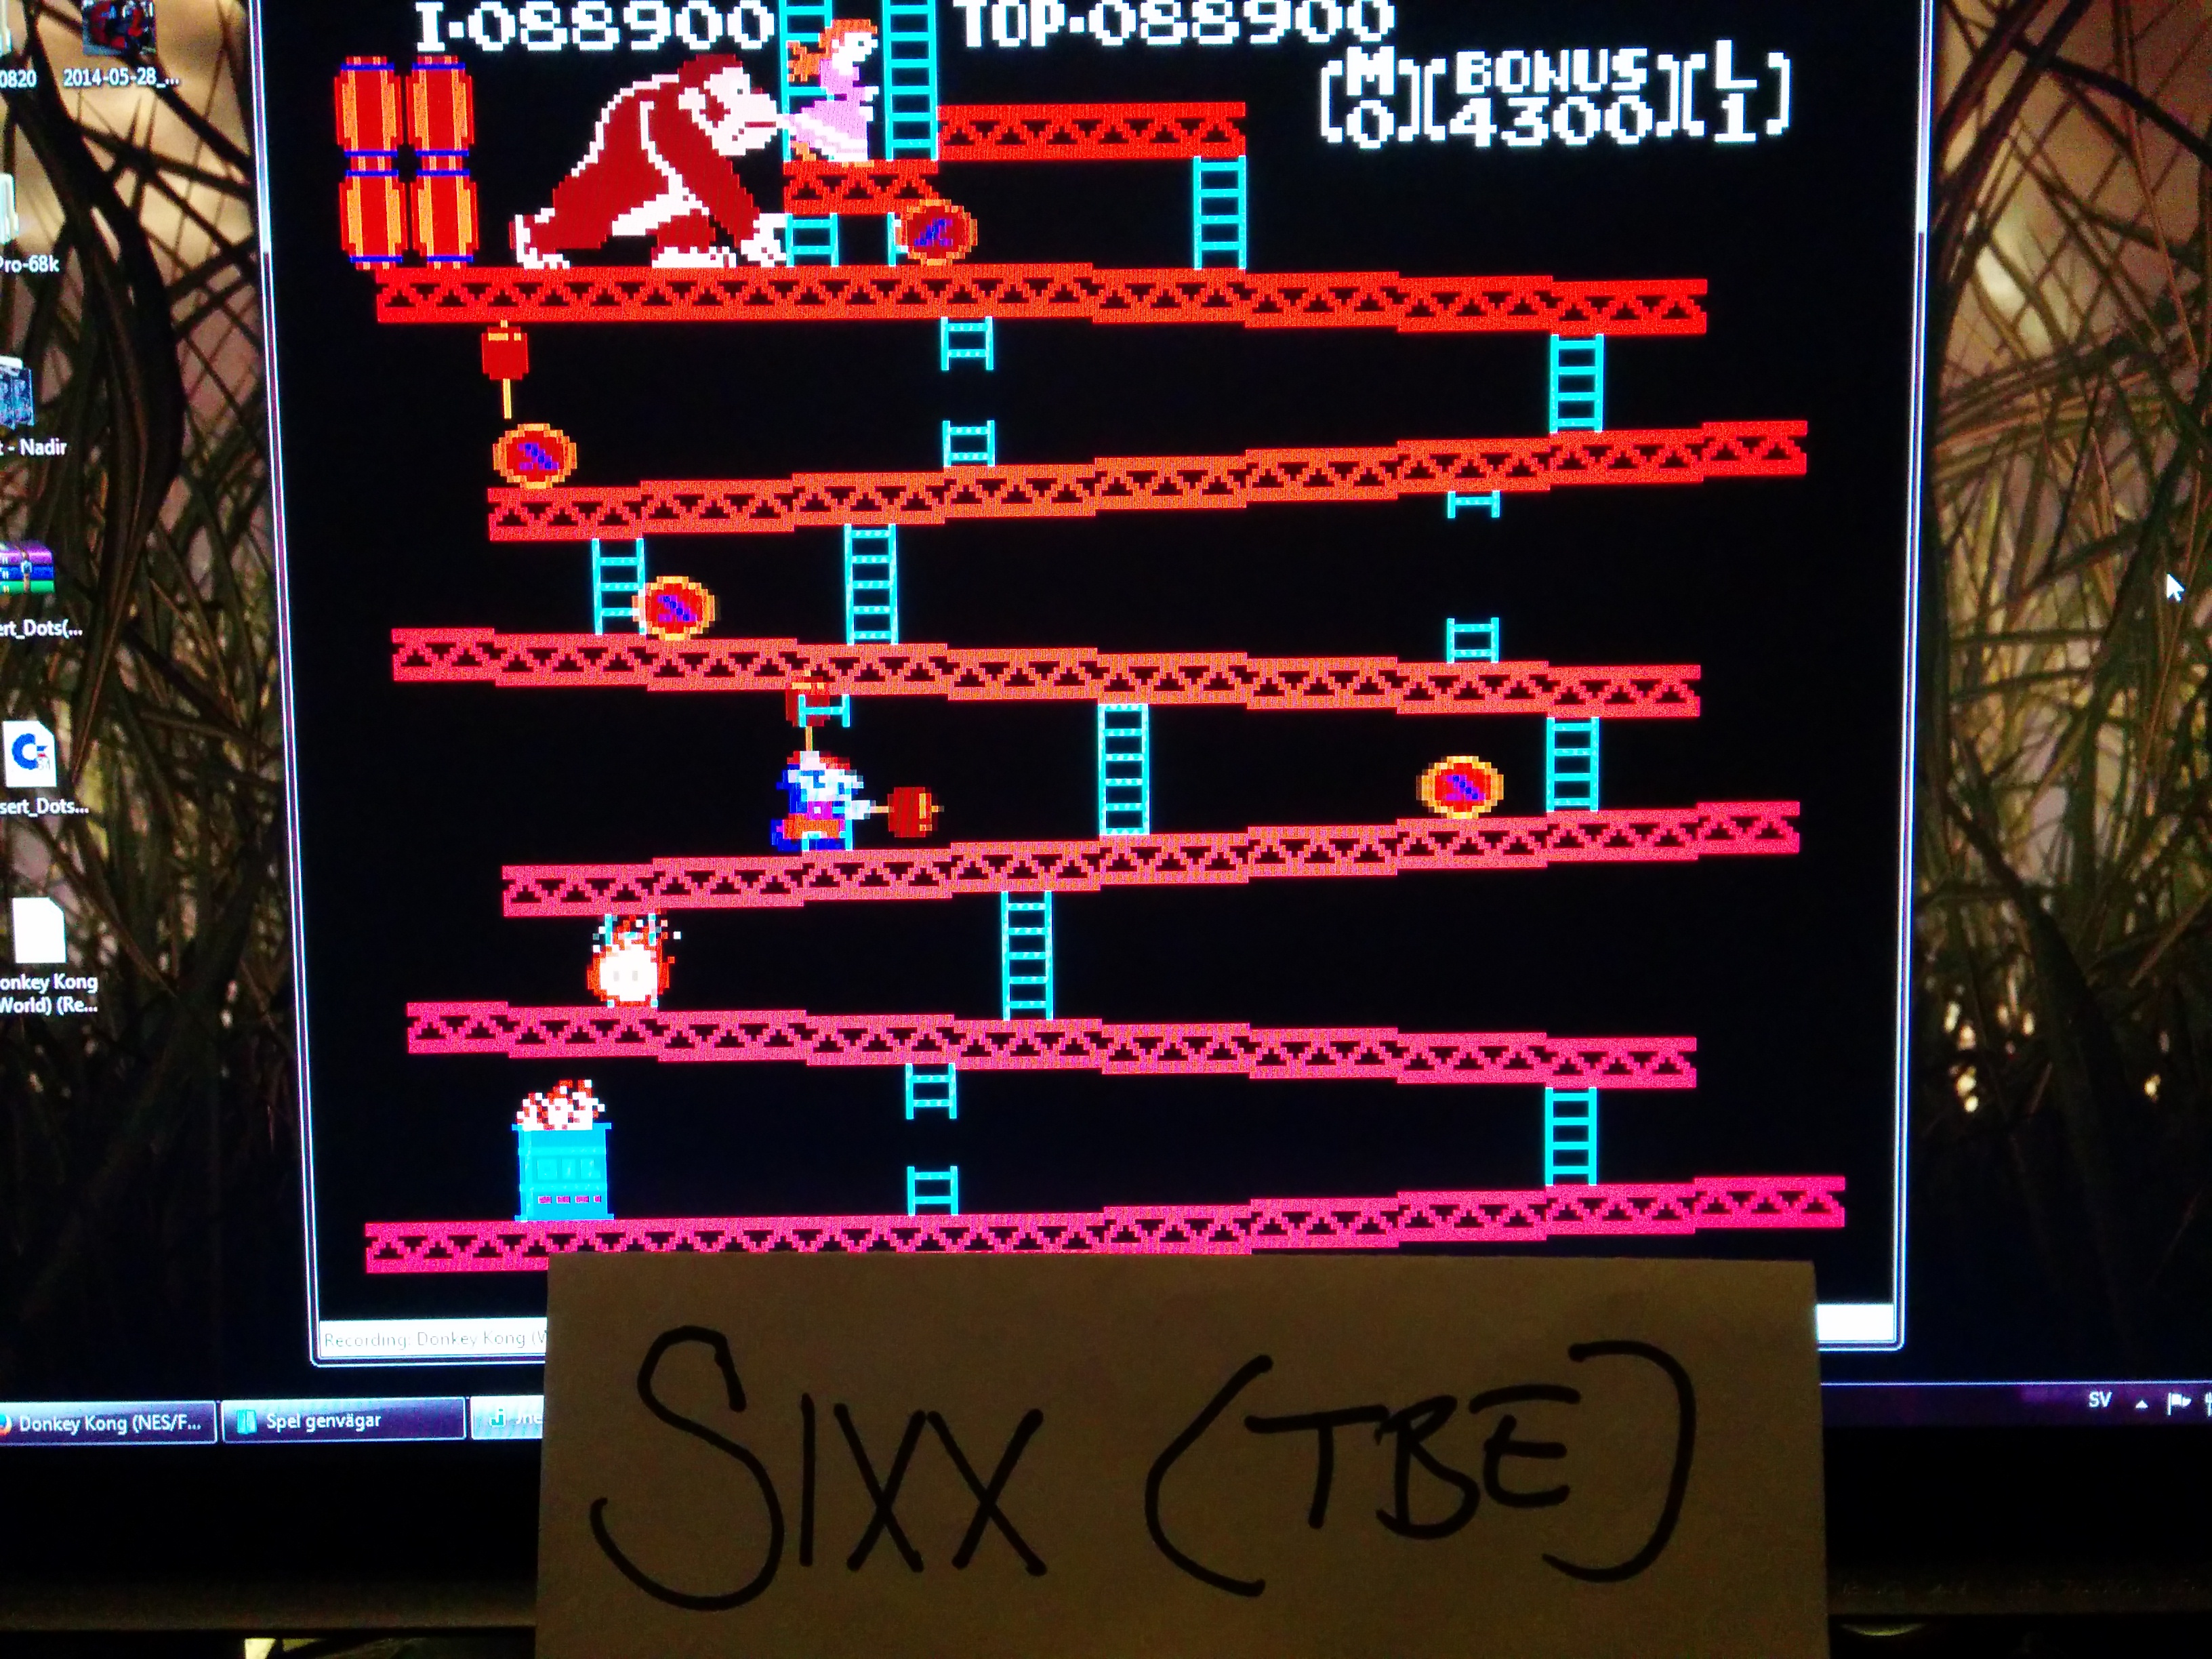 Sixx: Donkey Kong (NES/Famicom Emulated) 88,900 points on 2014-06-01 15:41:53